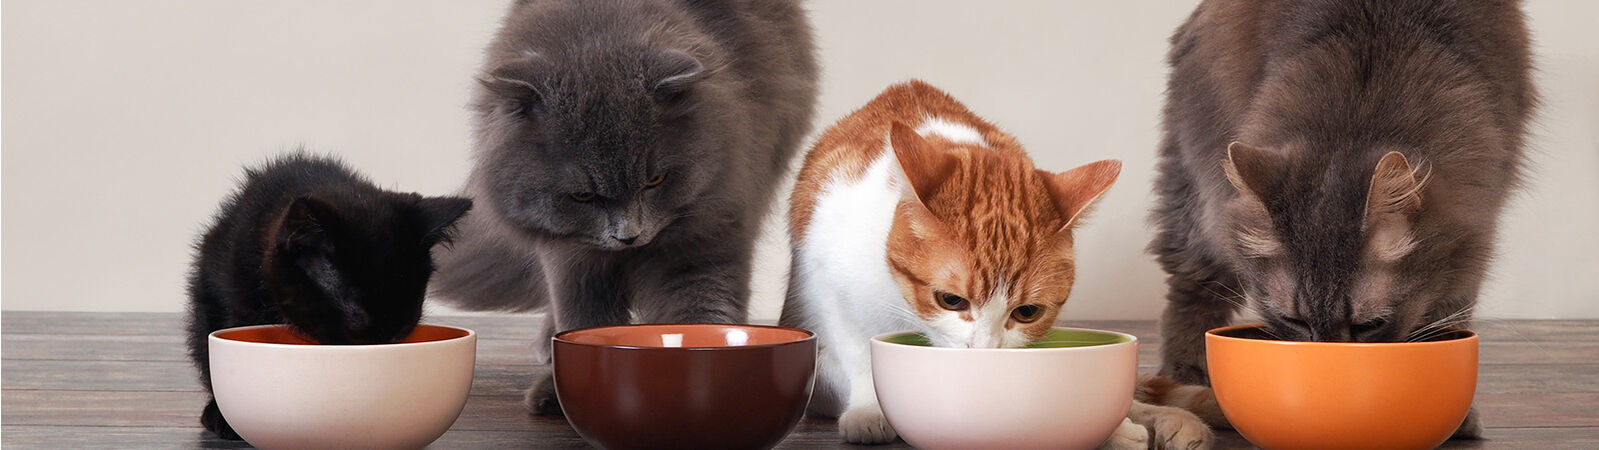 Drei Katzen und ein Kitten verschiedener Rassen fressen aus vier Näpfen.